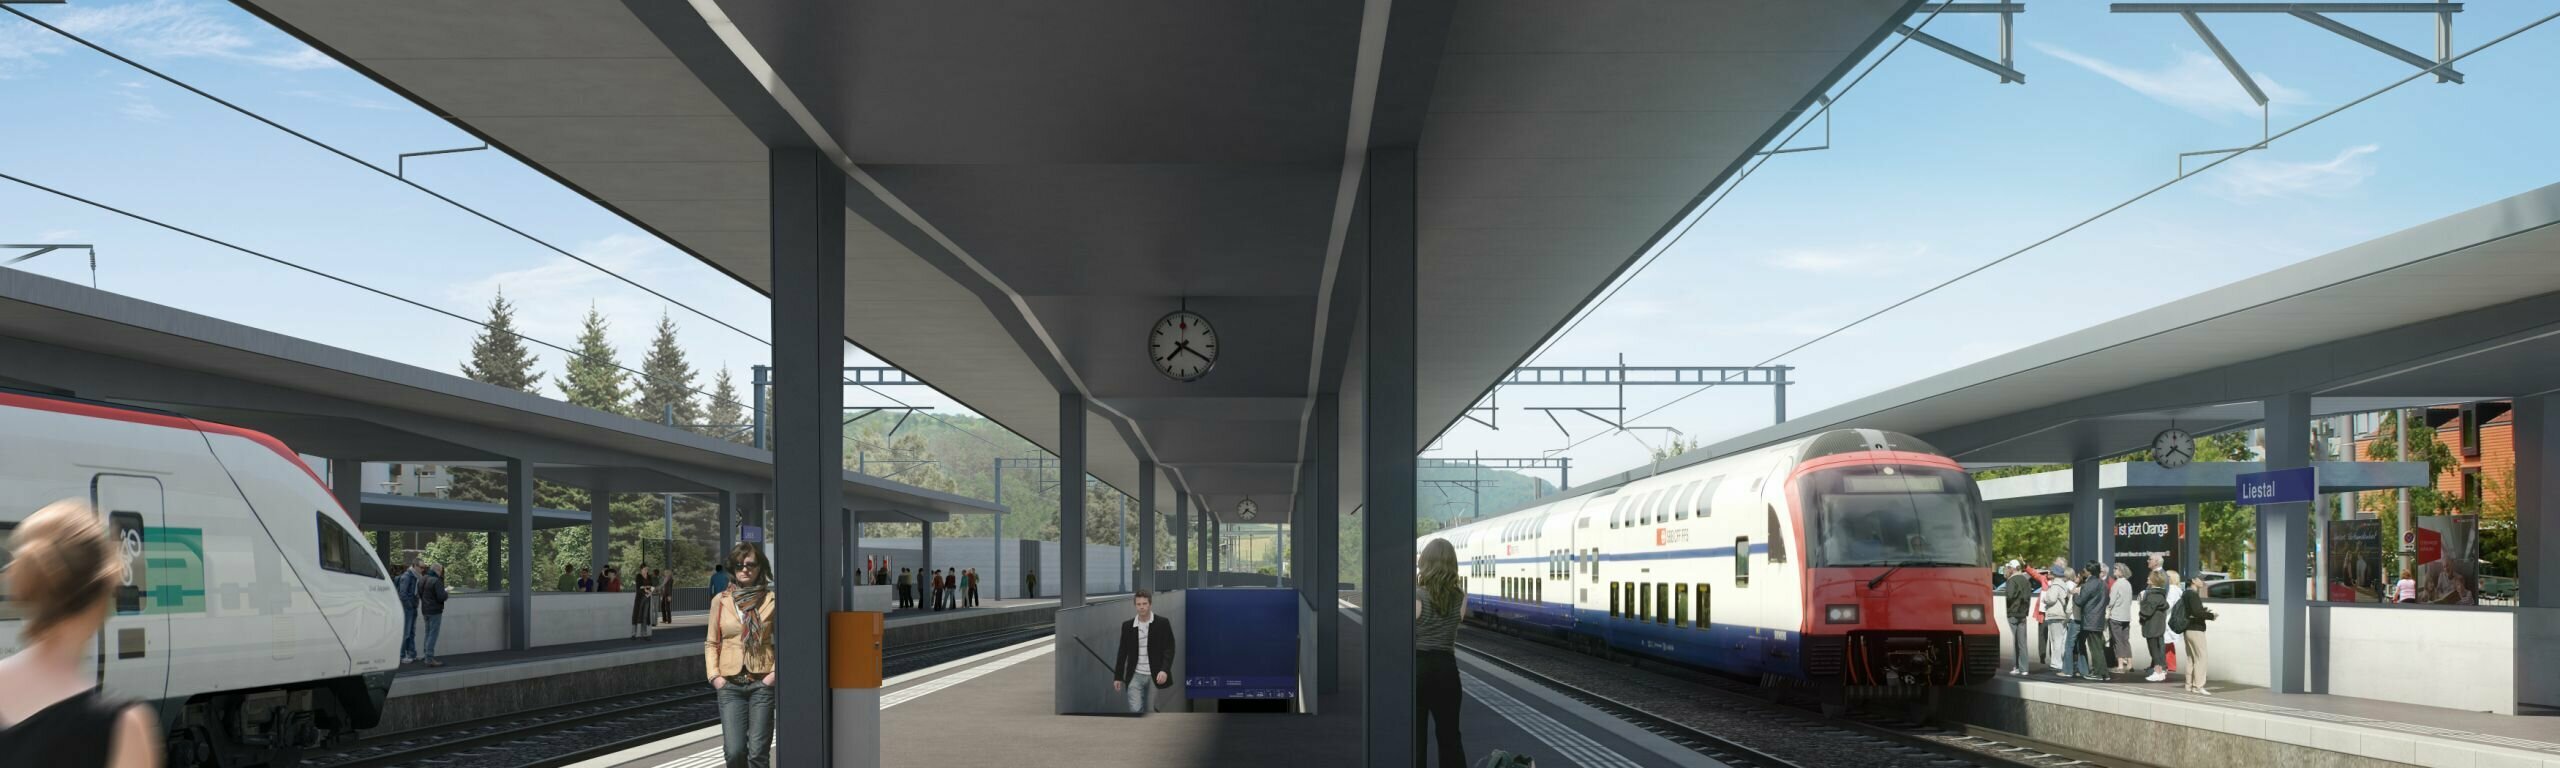 Der neue Mittelperron im Bahnhof vom Perron in Richtung Basel gesehen.